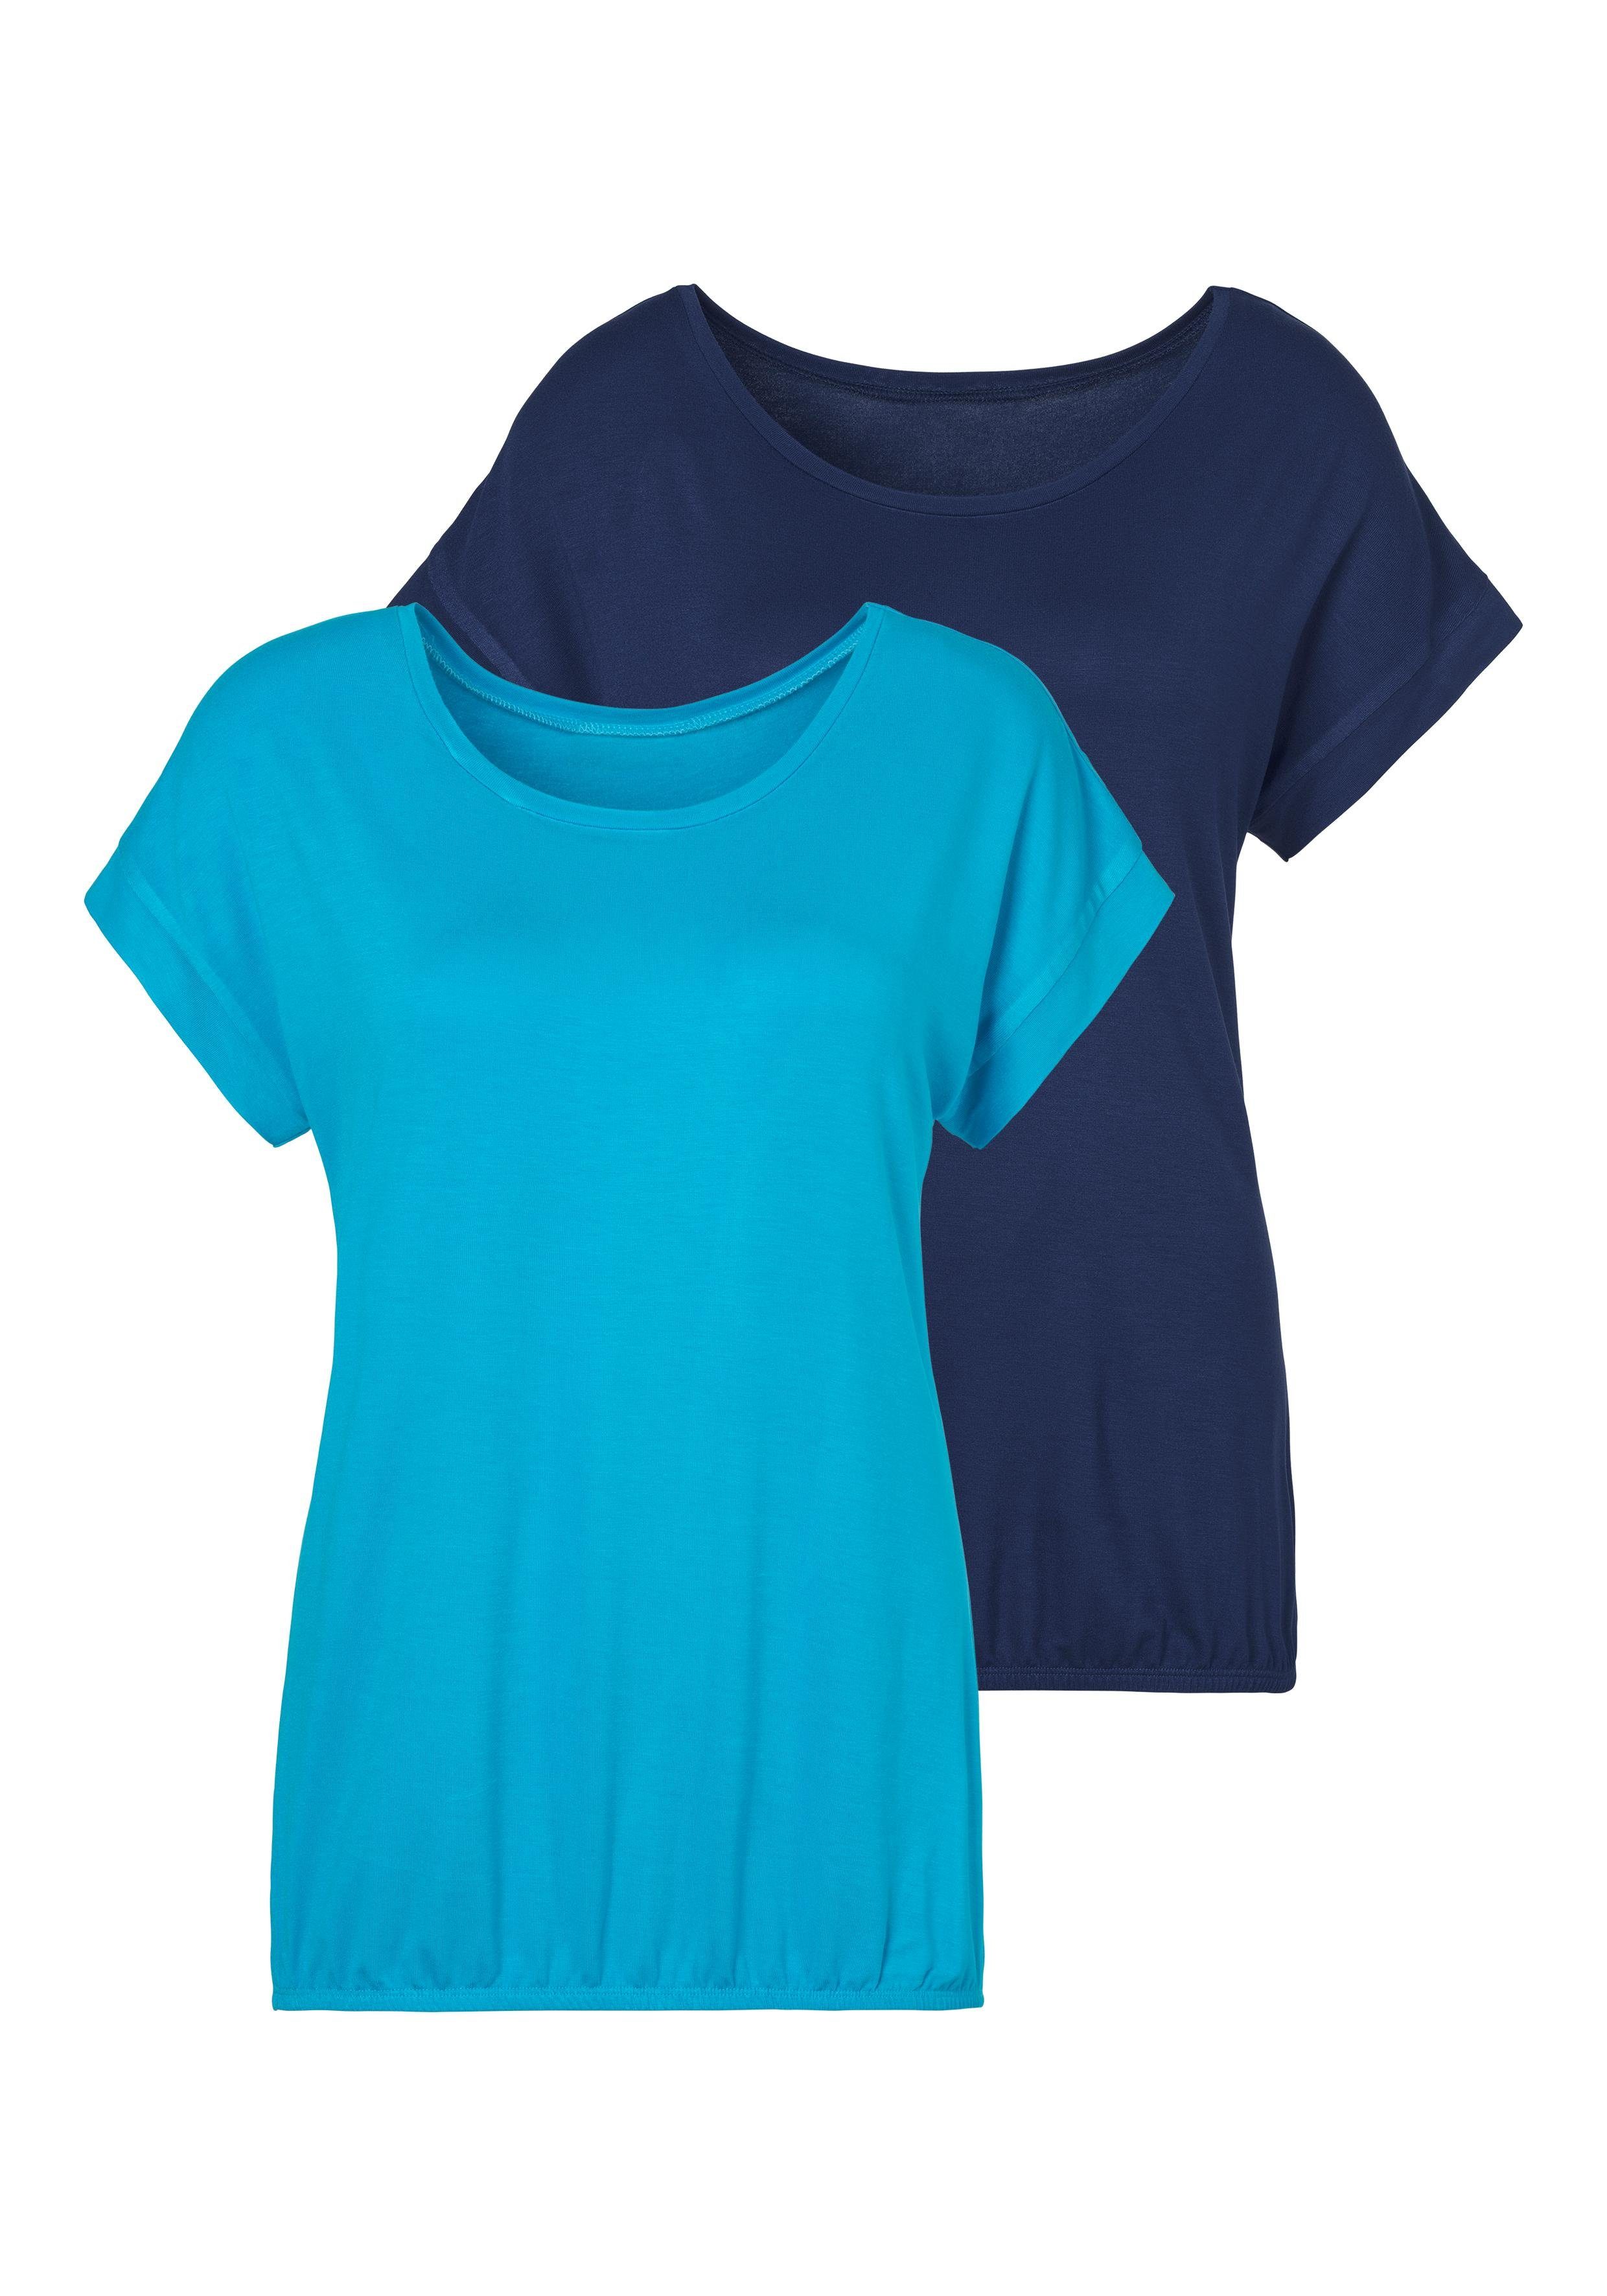 Blaue Damen T-Shirts online kaufen | OTTO